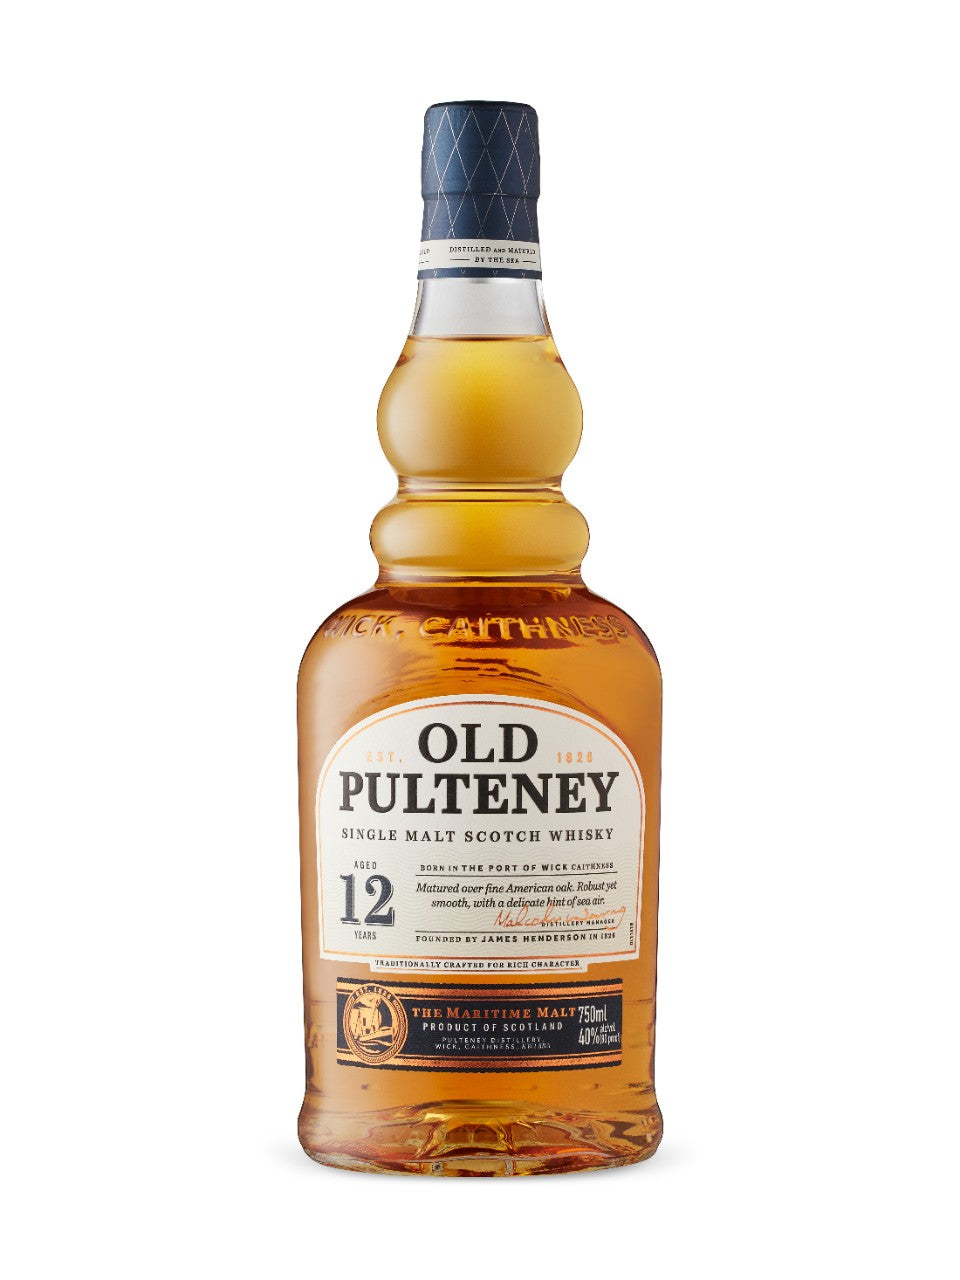 Old Pulteney 12 Year Old Single Malt 750 mL bottle